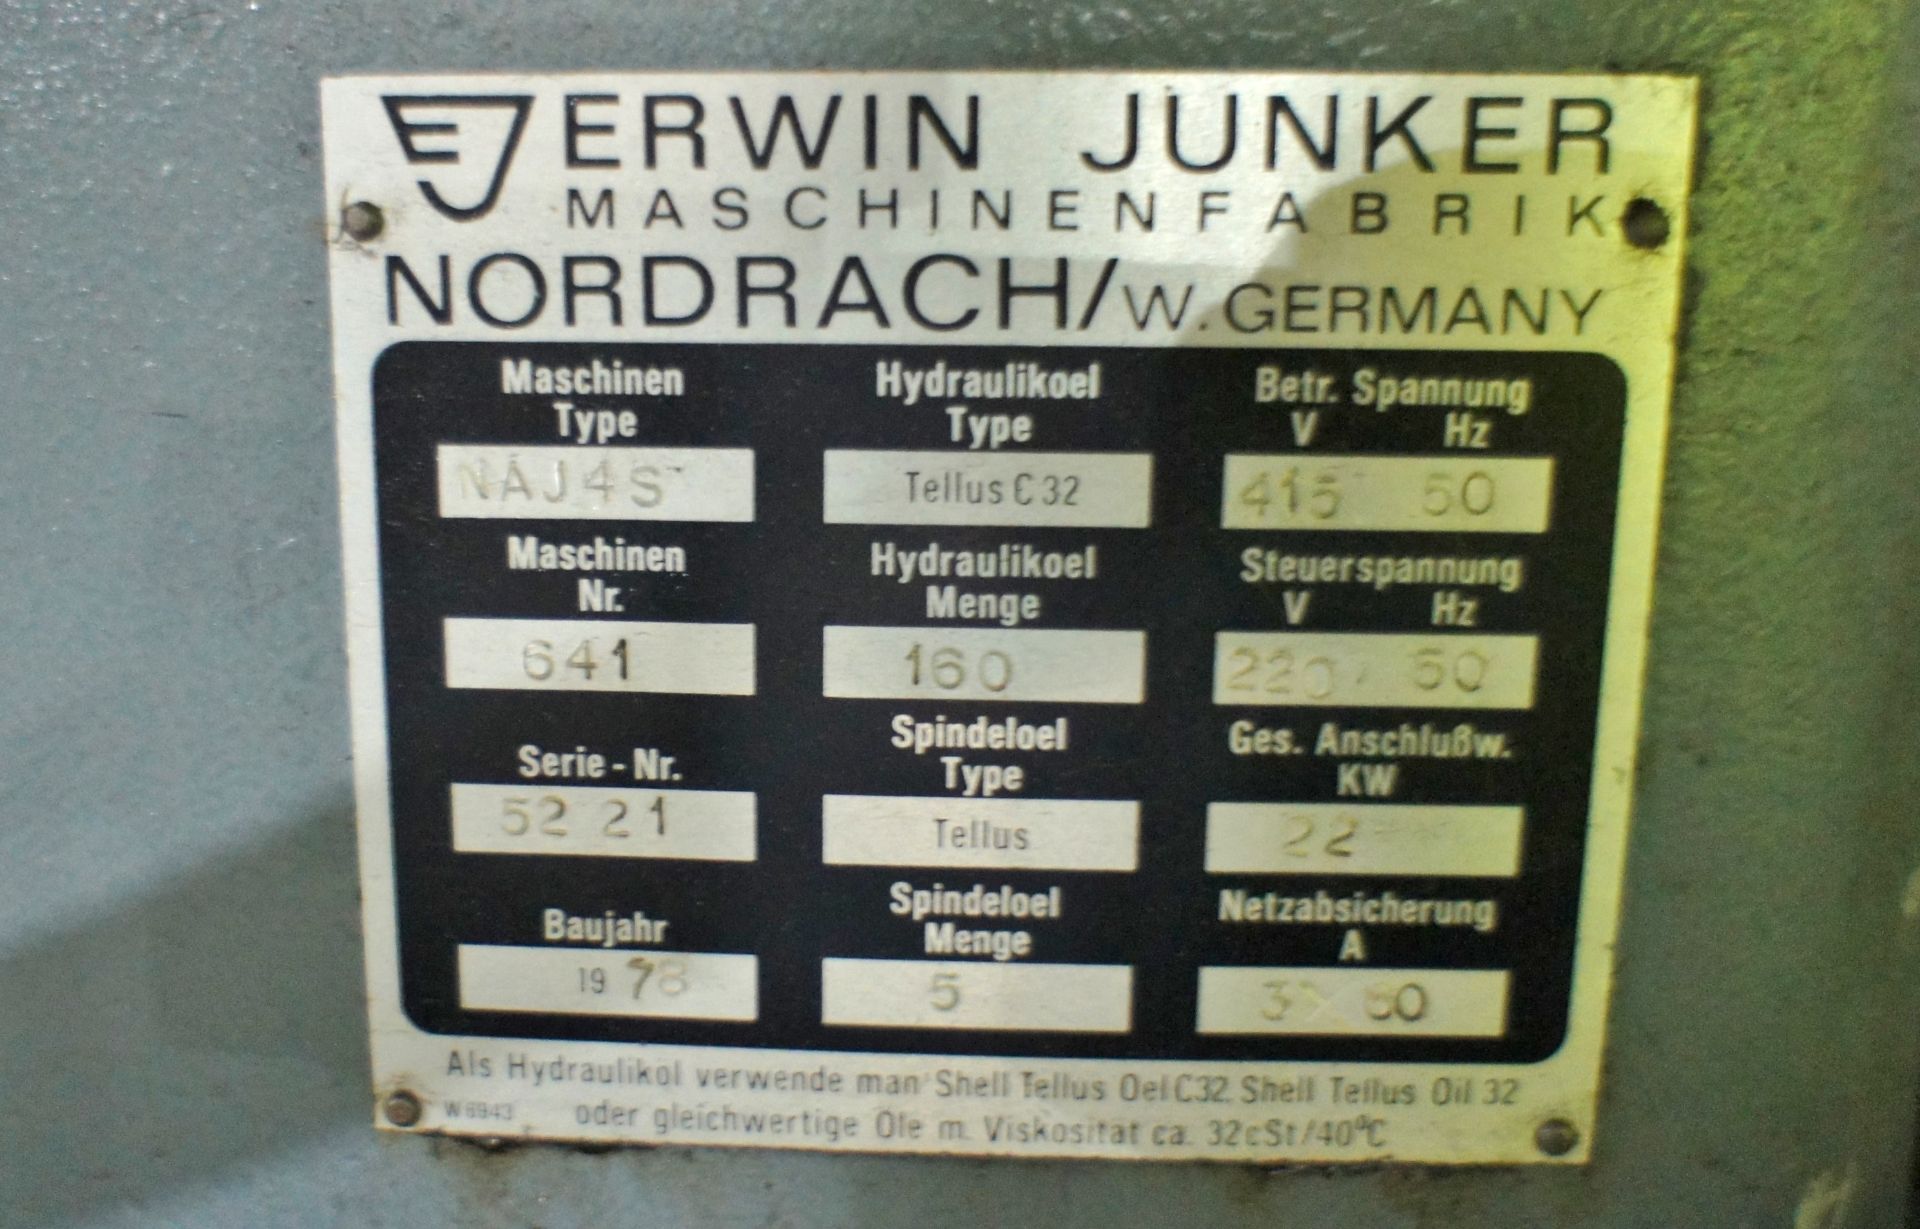 Junker NAJ4S saw tooth / tool grinder - Image 10 of 13